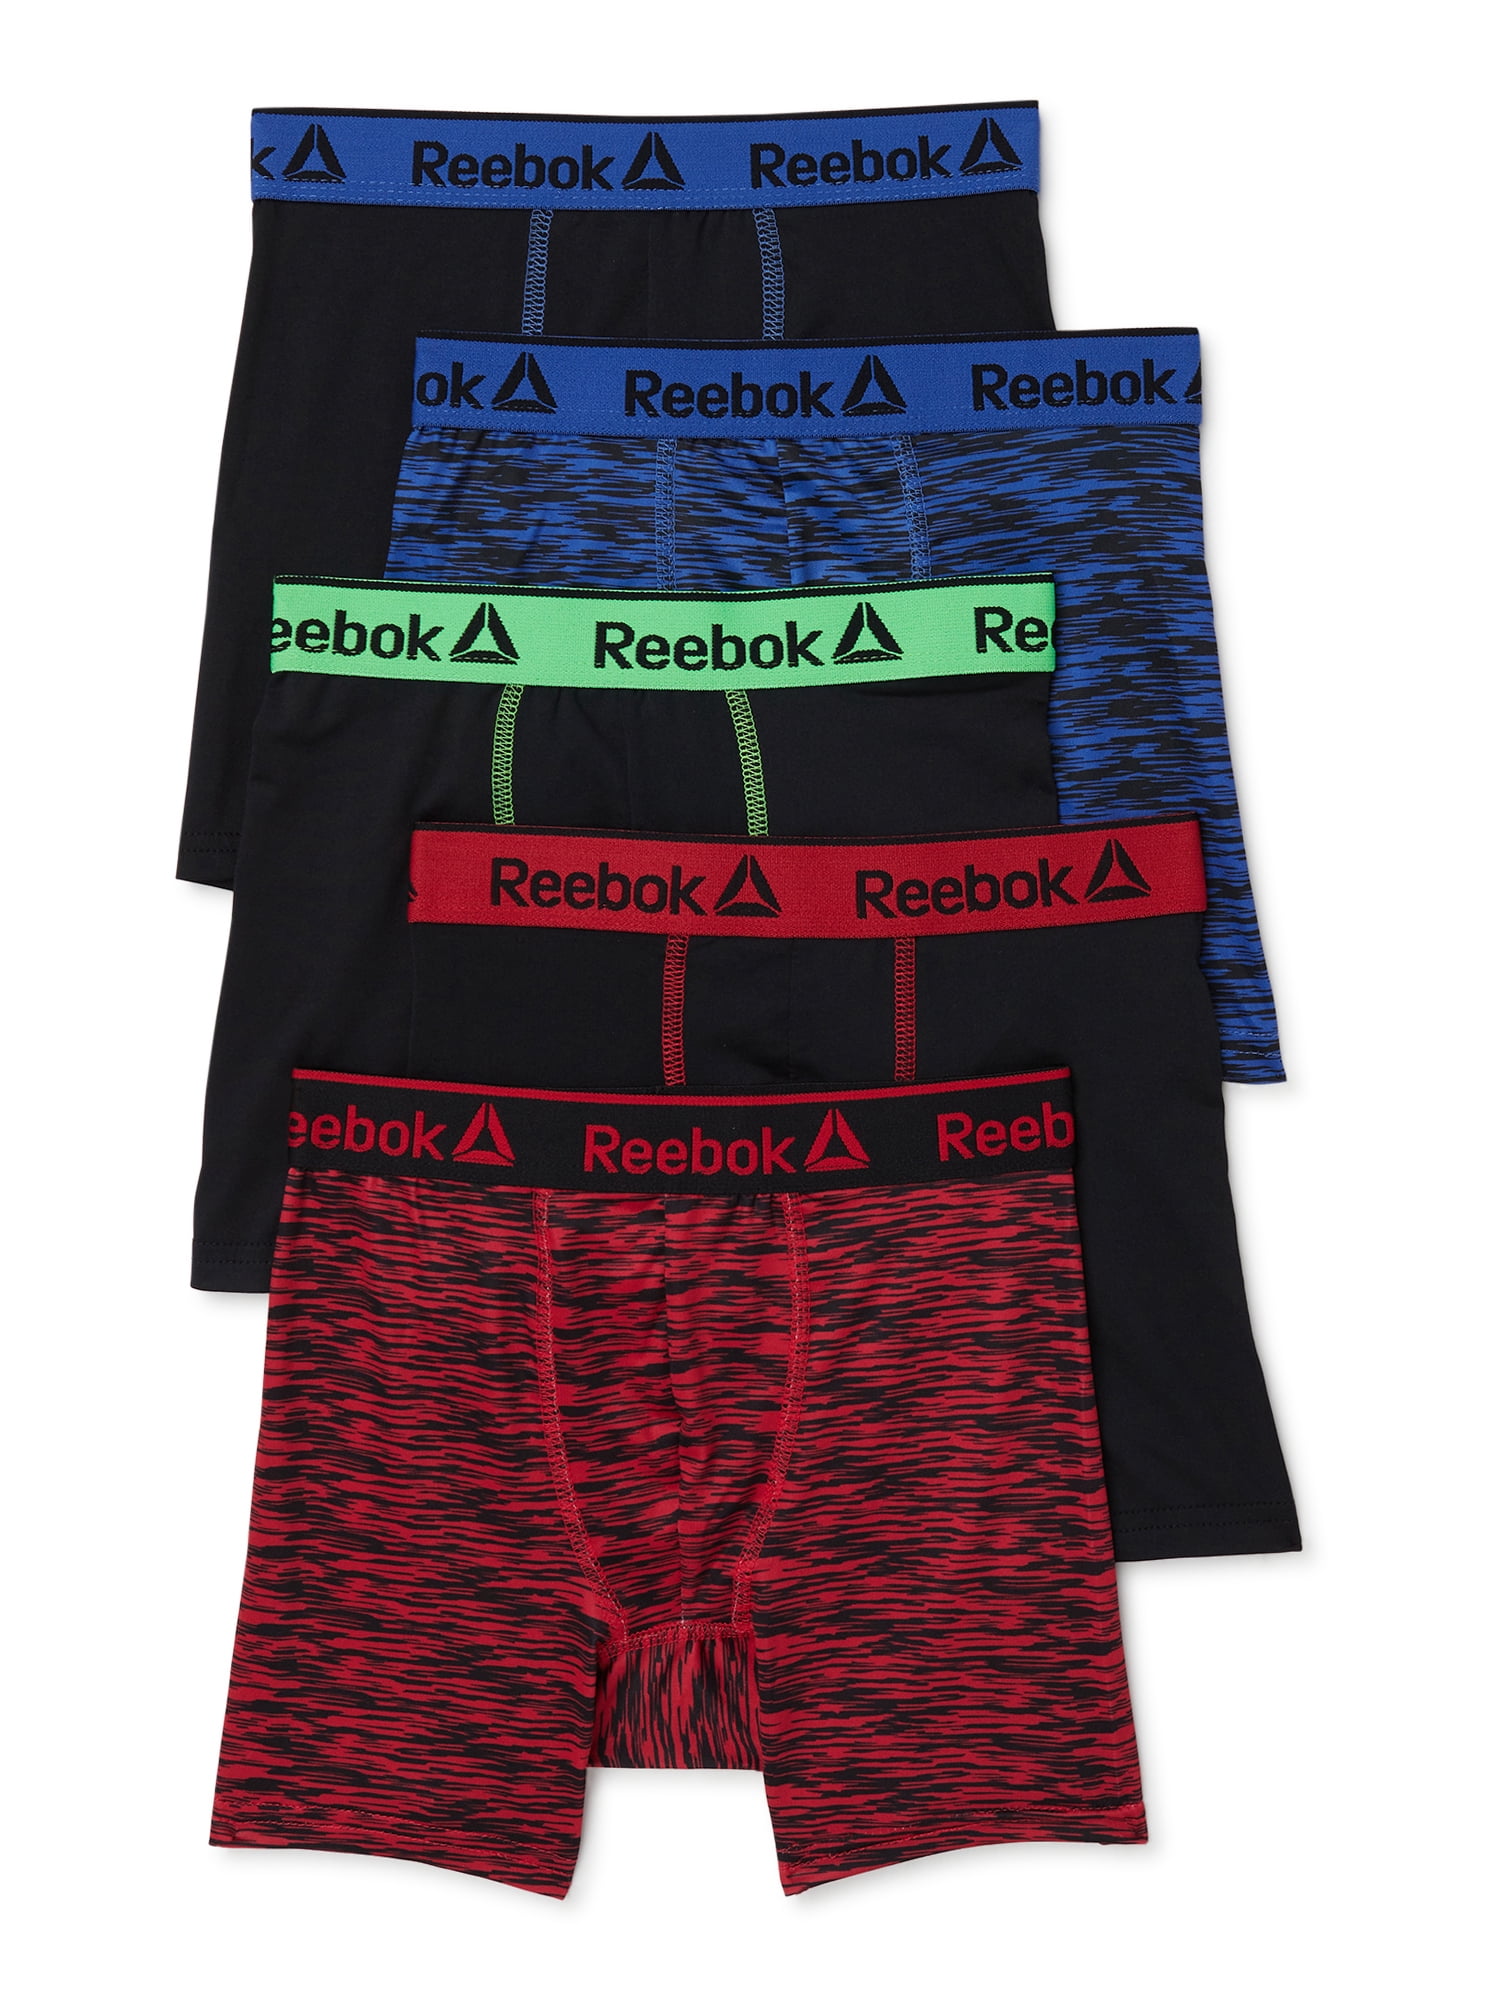 Reebok Boys Underwear Performance Boxer Briefs, 5-Pack 